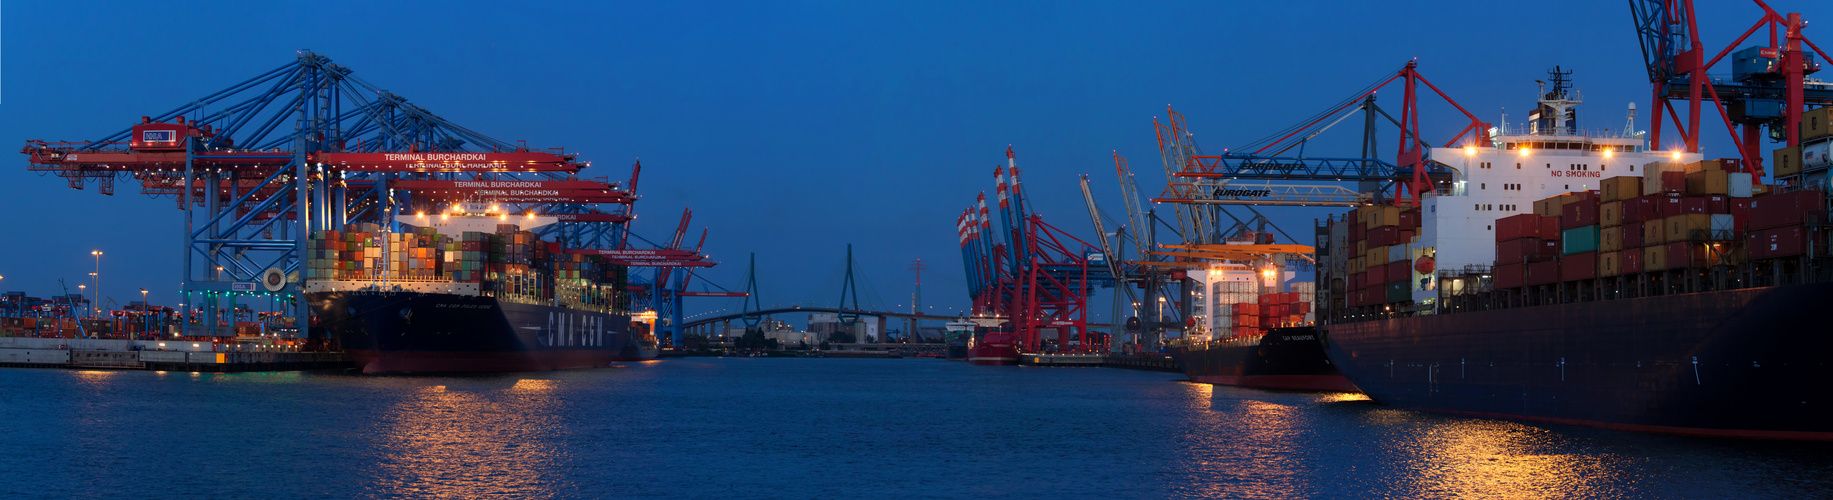 Containerverladung im Hamburger Hafen